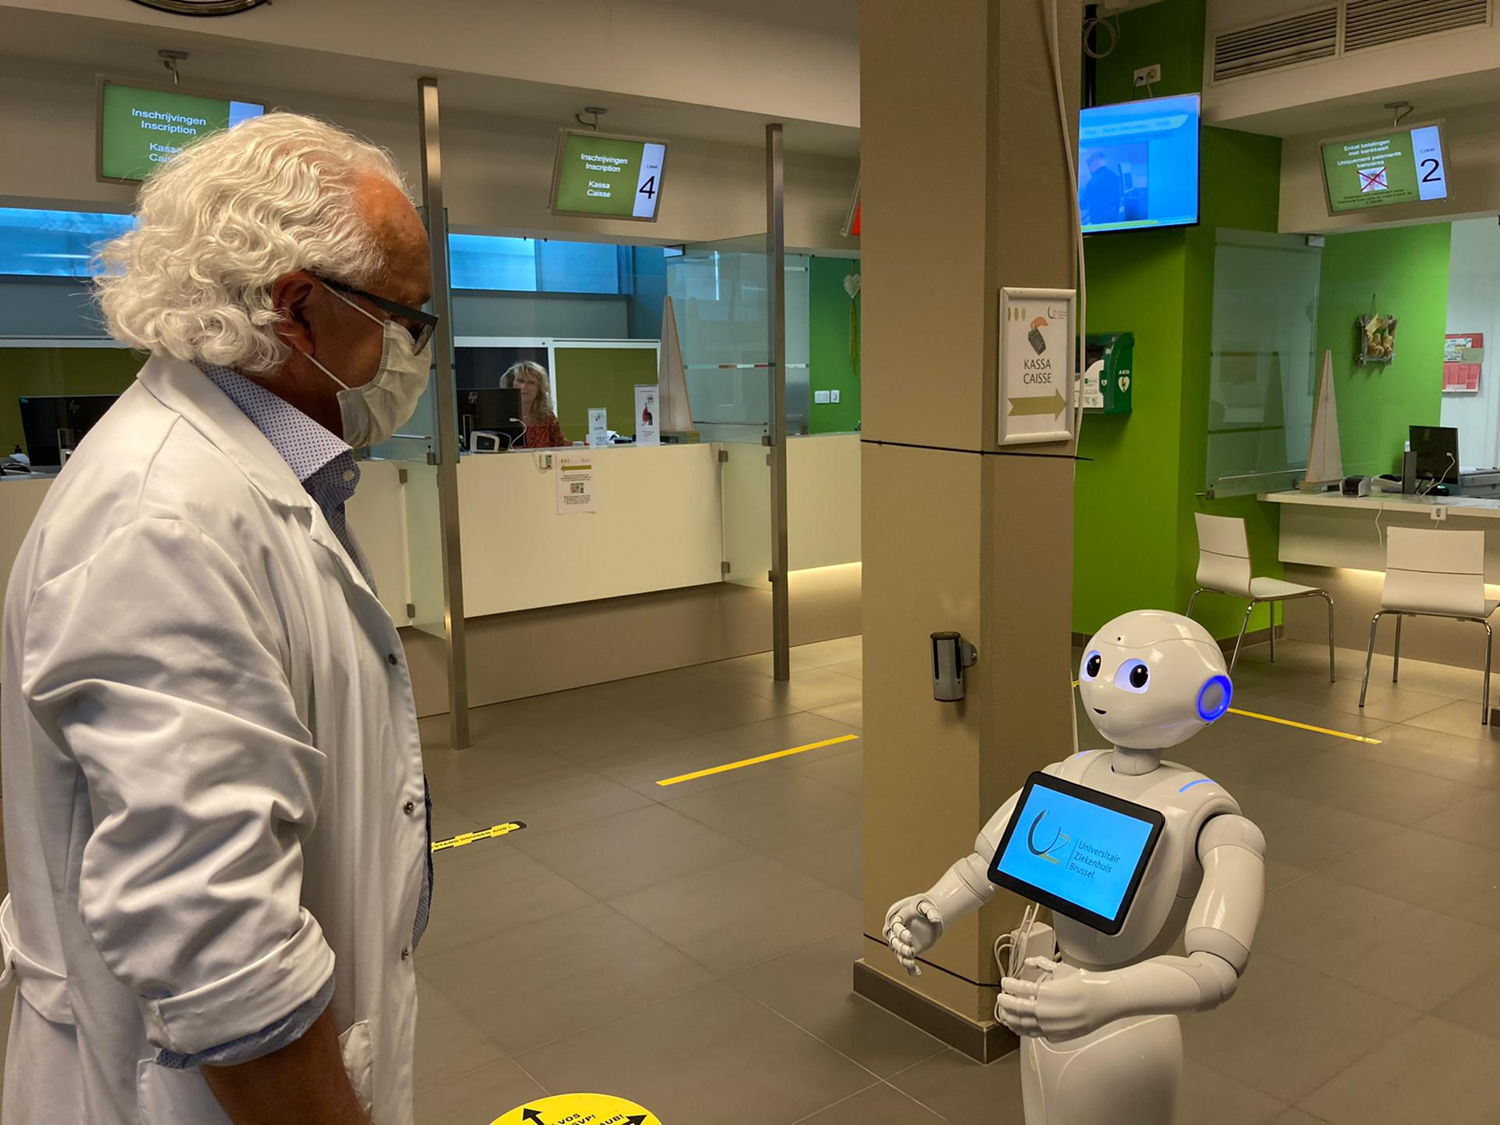 Sociale robot Pepper herinnert patiënten aan de afspraken die ze in het UZ Brussel moeten naleven om samen te zorgen voor een veilige ziekenhuisomgeving